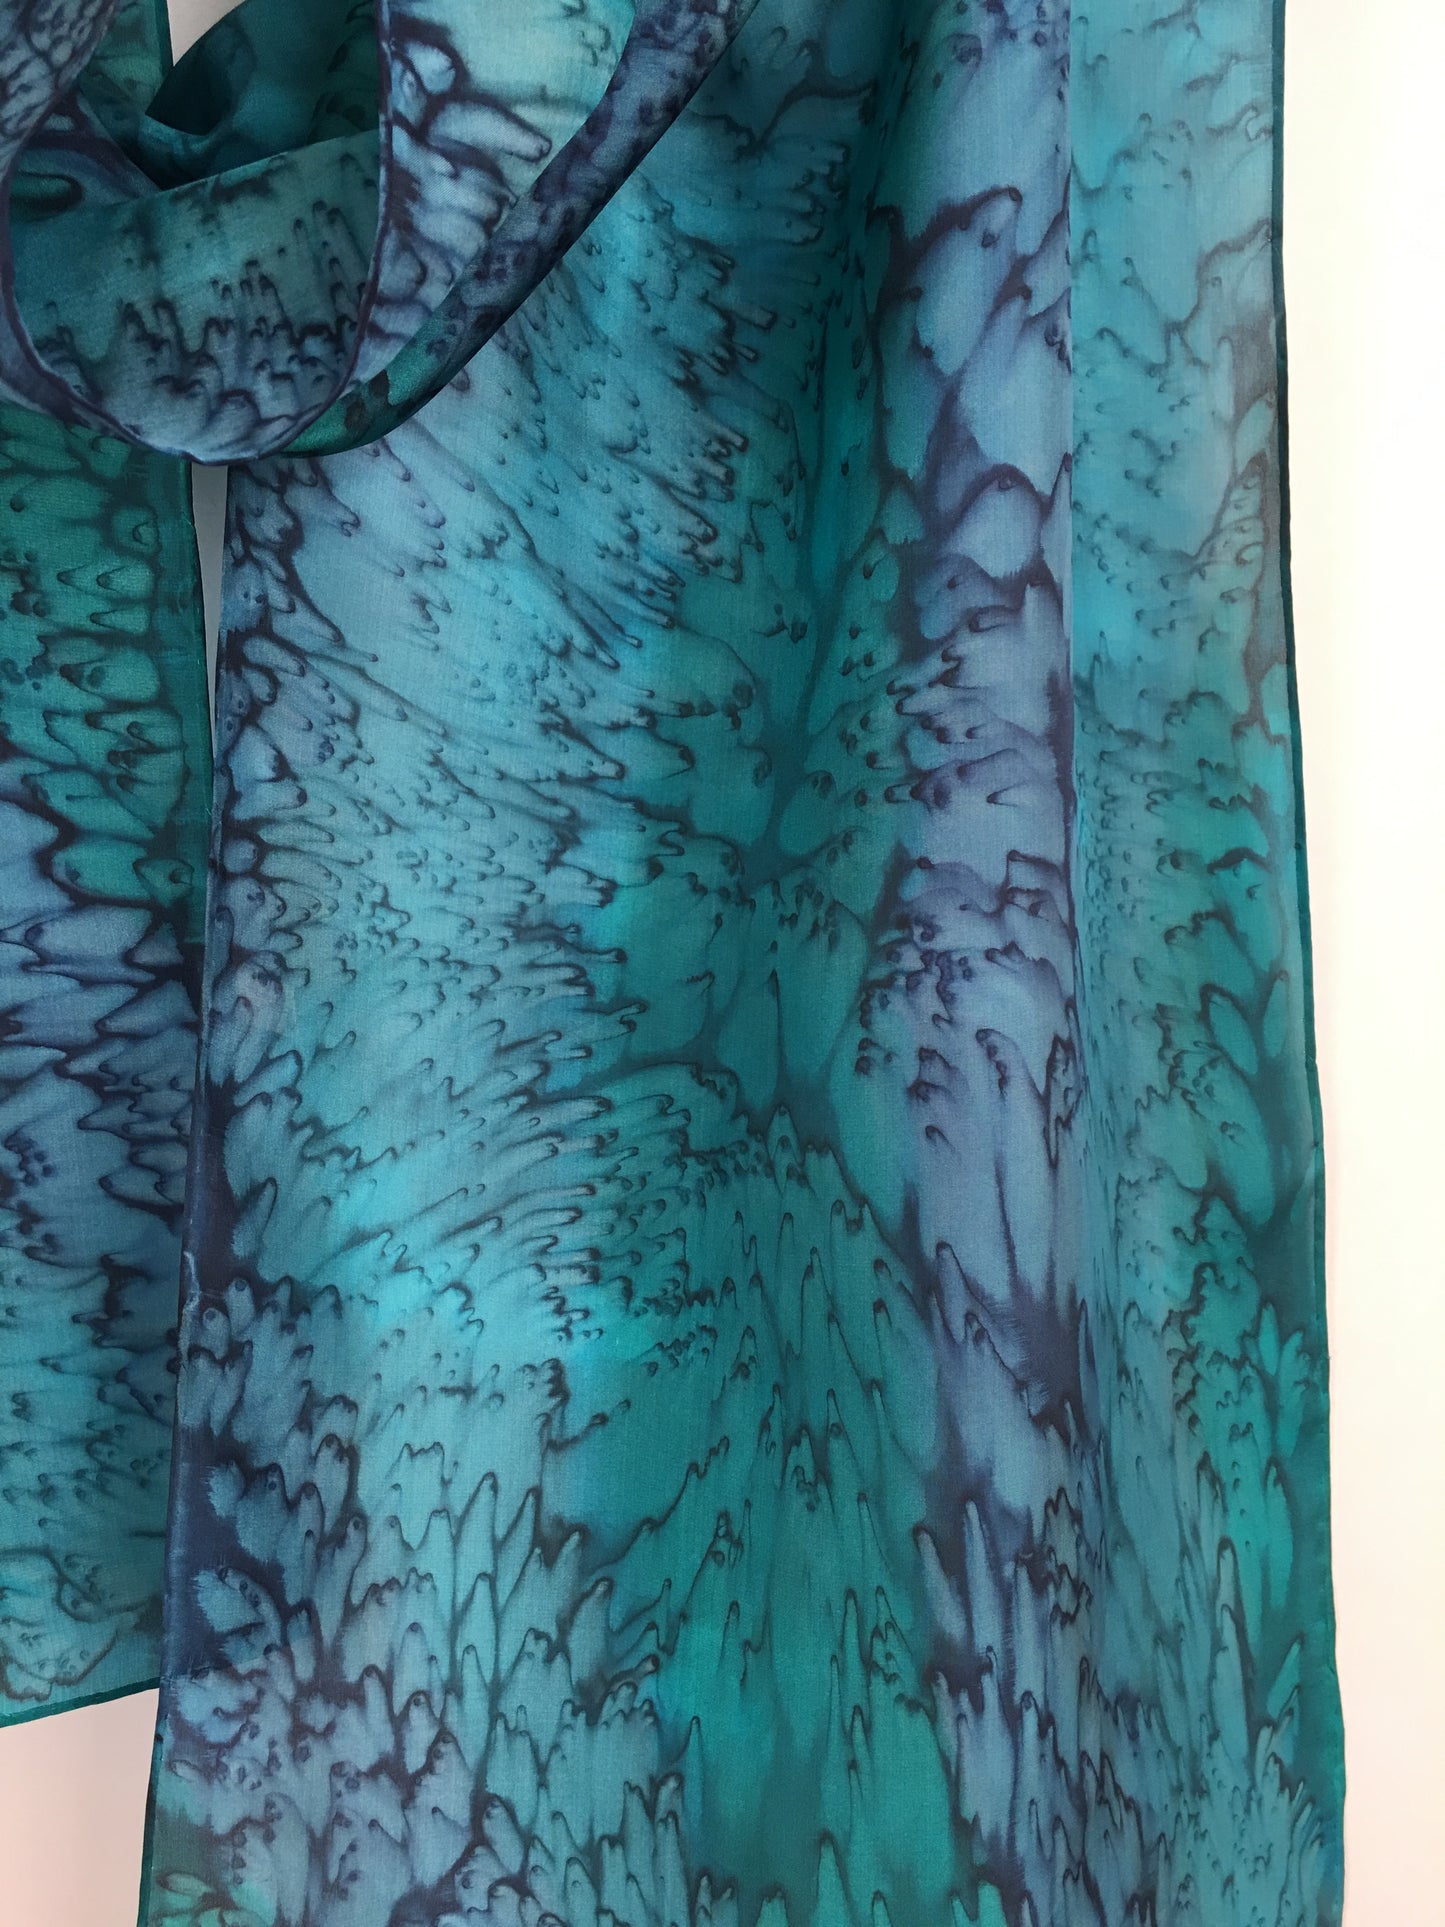 "Mermaid Ocean Reef" - Hand-dyed Silk Scarf - $115